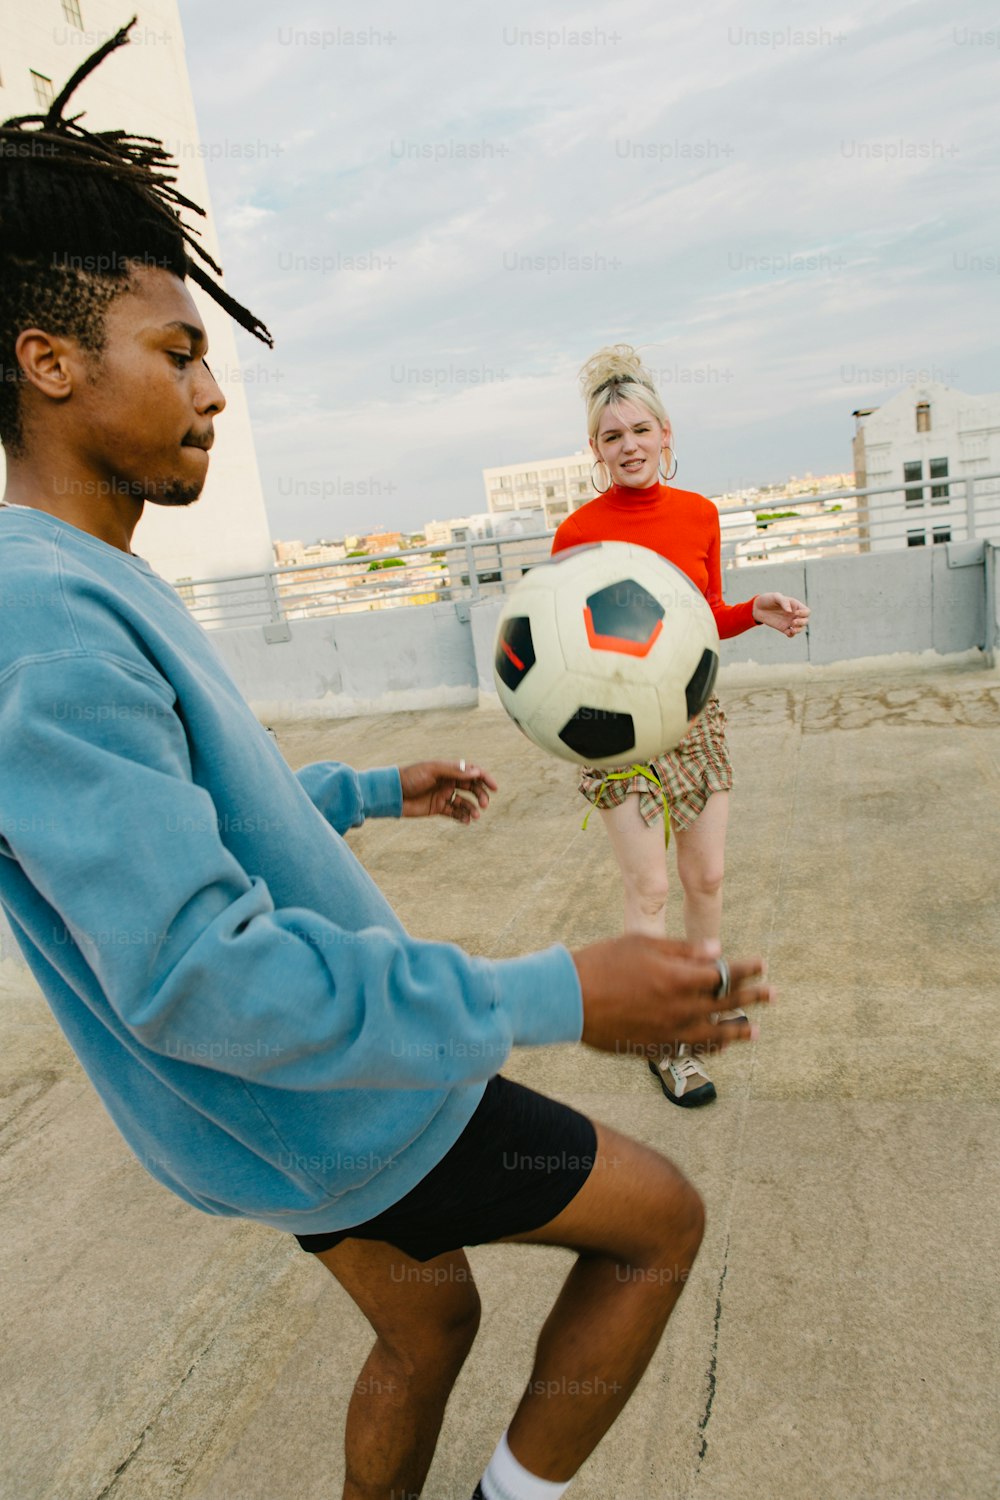 Un hombre con rastas jugando con una pelota de fútbol